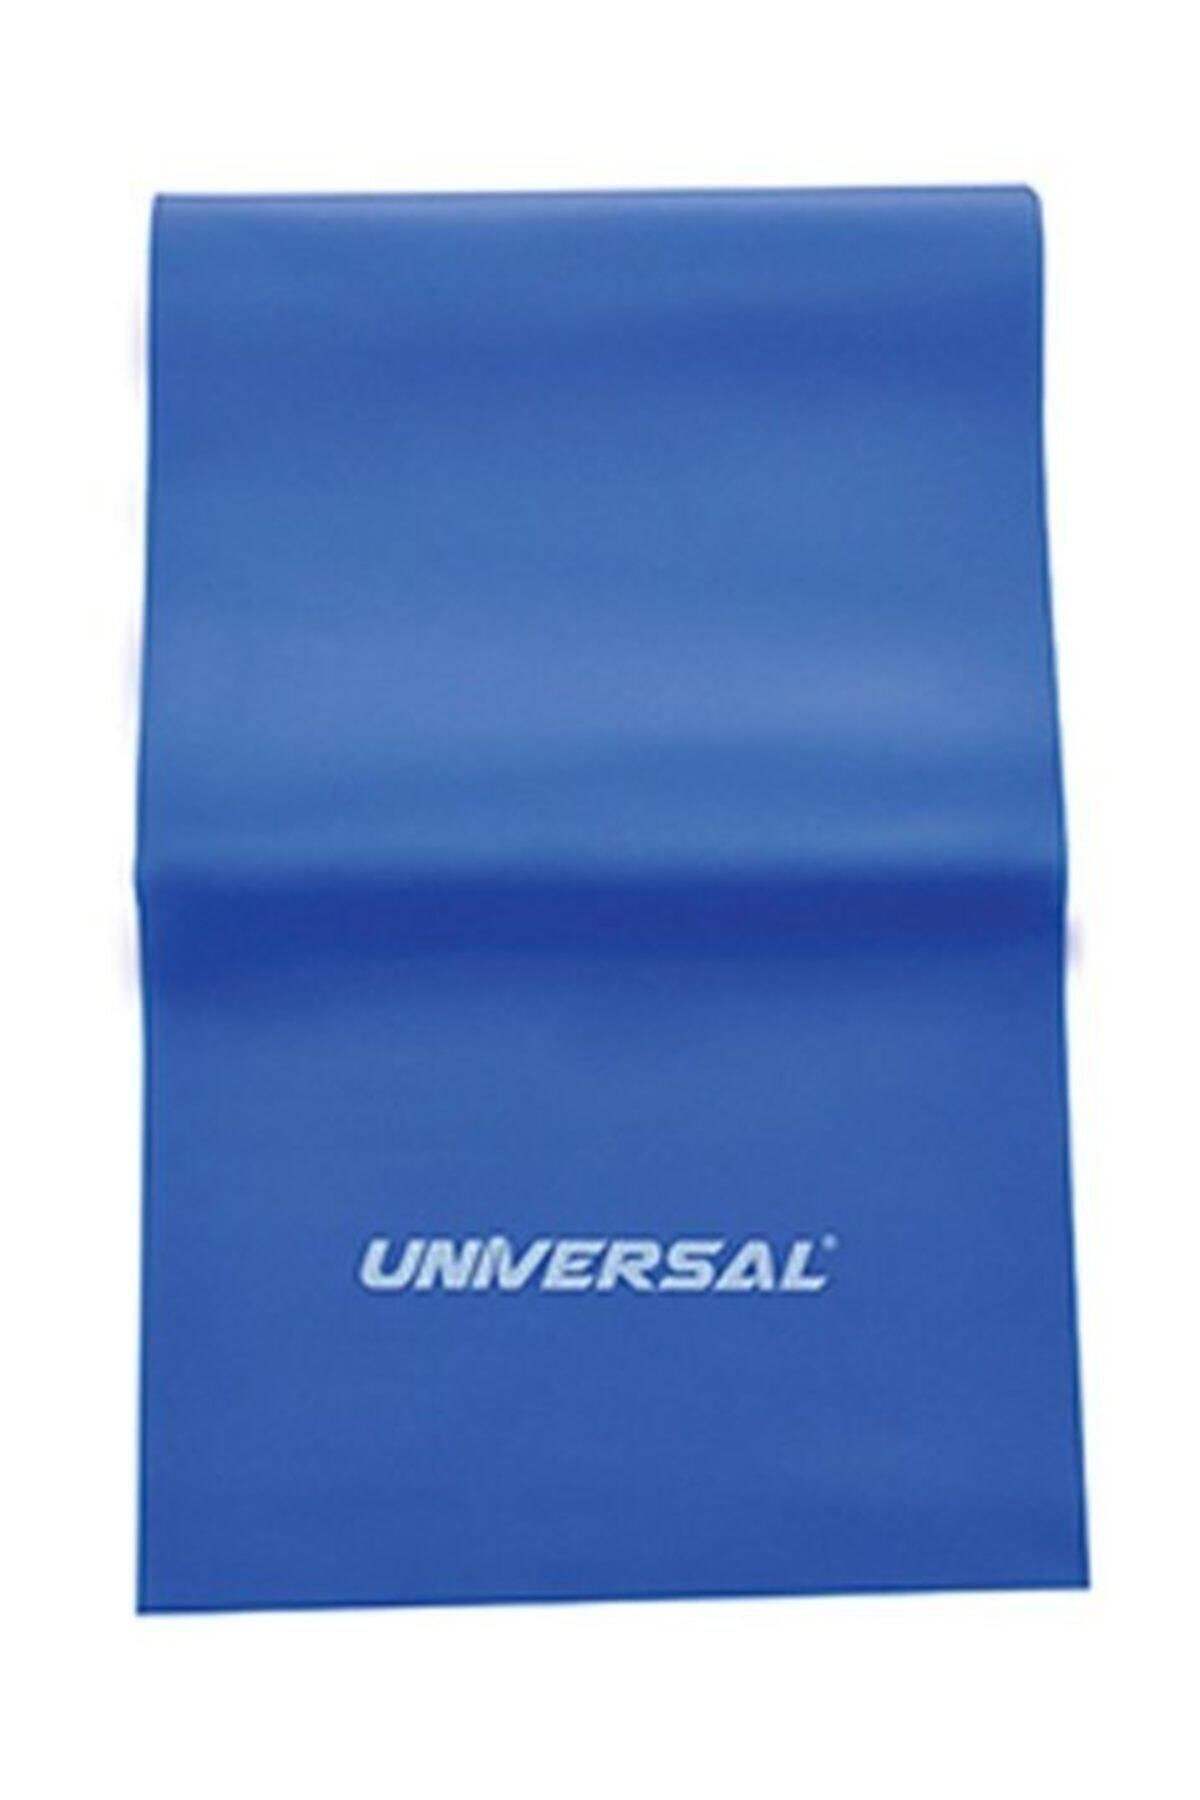 Universal Unisex Pılates Bandı Tekli 0,55Mm Mavi 1UNAKPILBAND/034